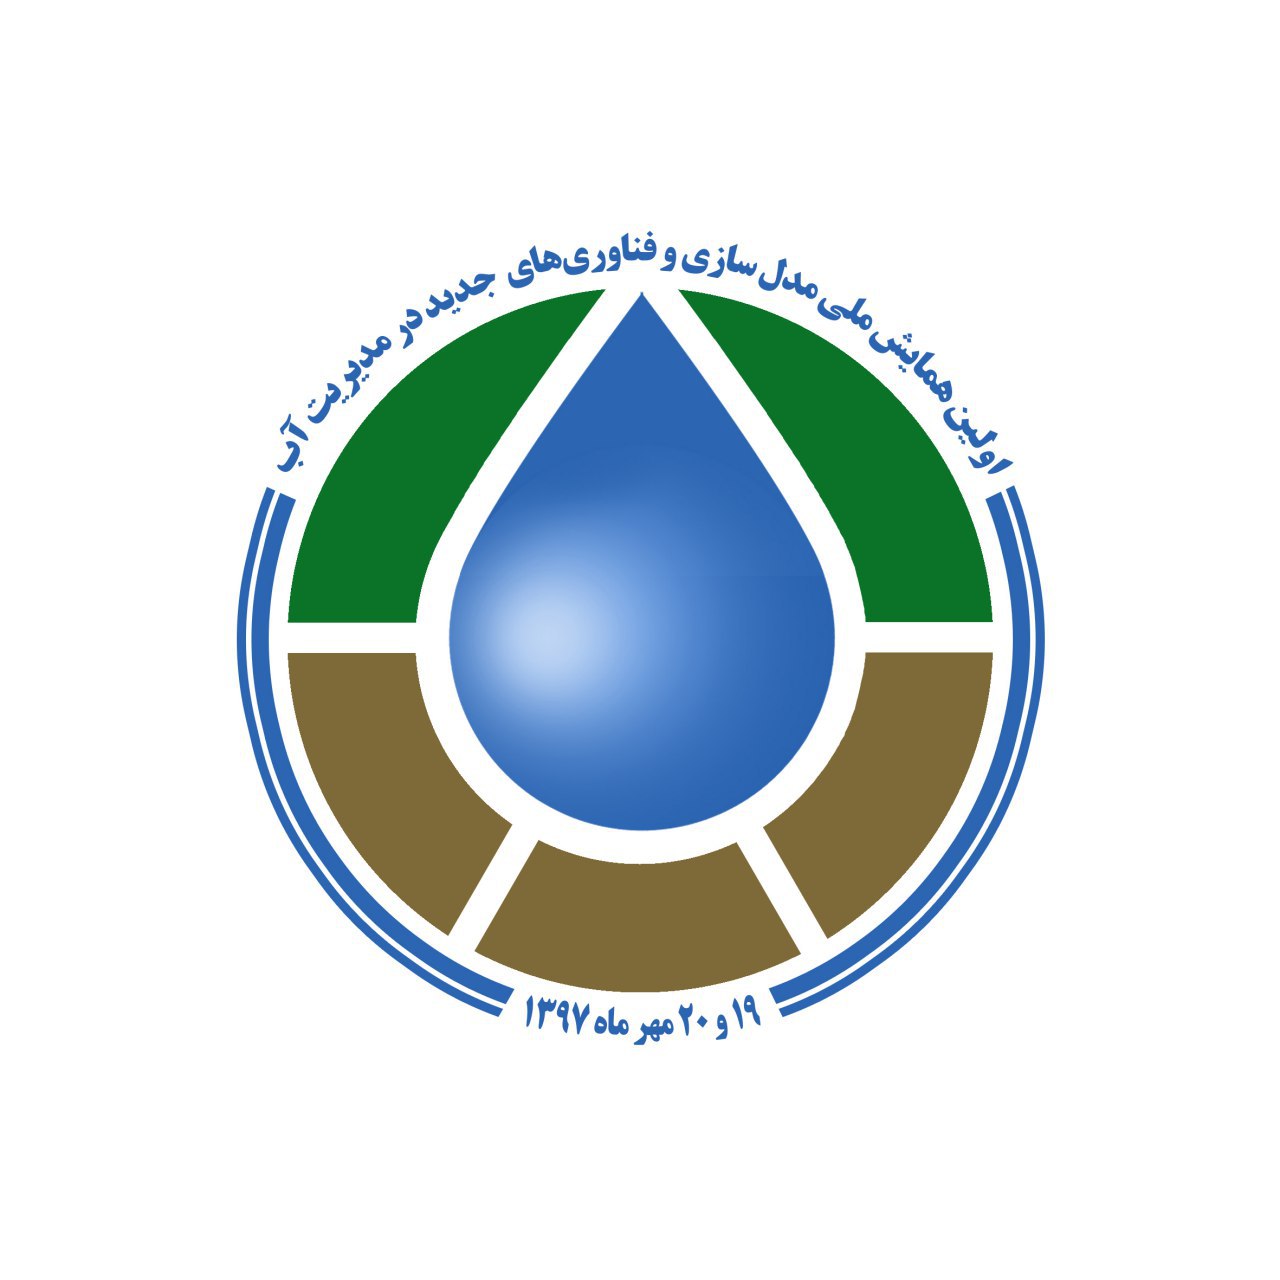 انتقال آب از دریای عمان به خراسان جنوبی